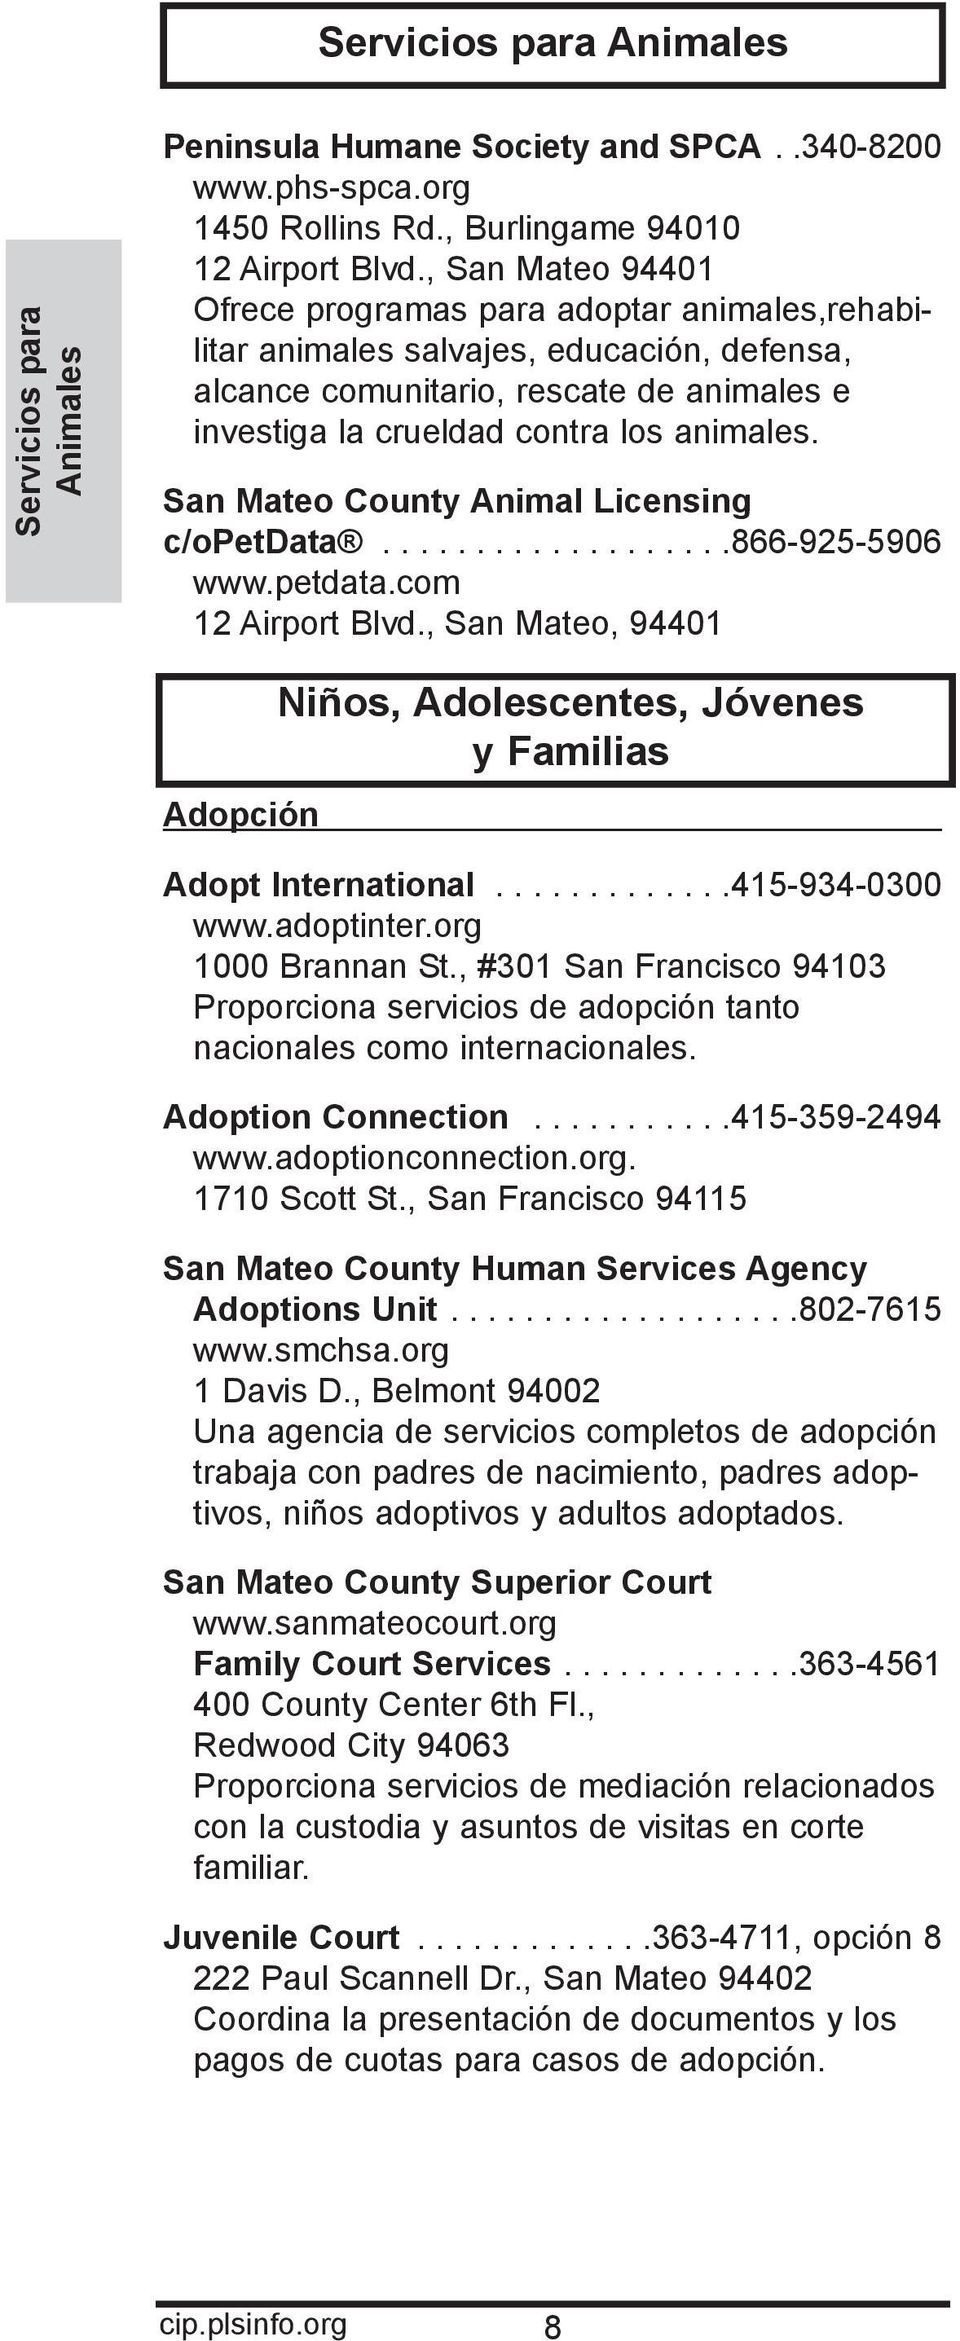 San Mateo County Animal Licensing c/opetdata...................866-925-5906 www.petdata.com 12 Airport Blvd., San Mateo, 94401 Adopción Niños, Adolescentes, Jóvenes y Familias Adopt International.